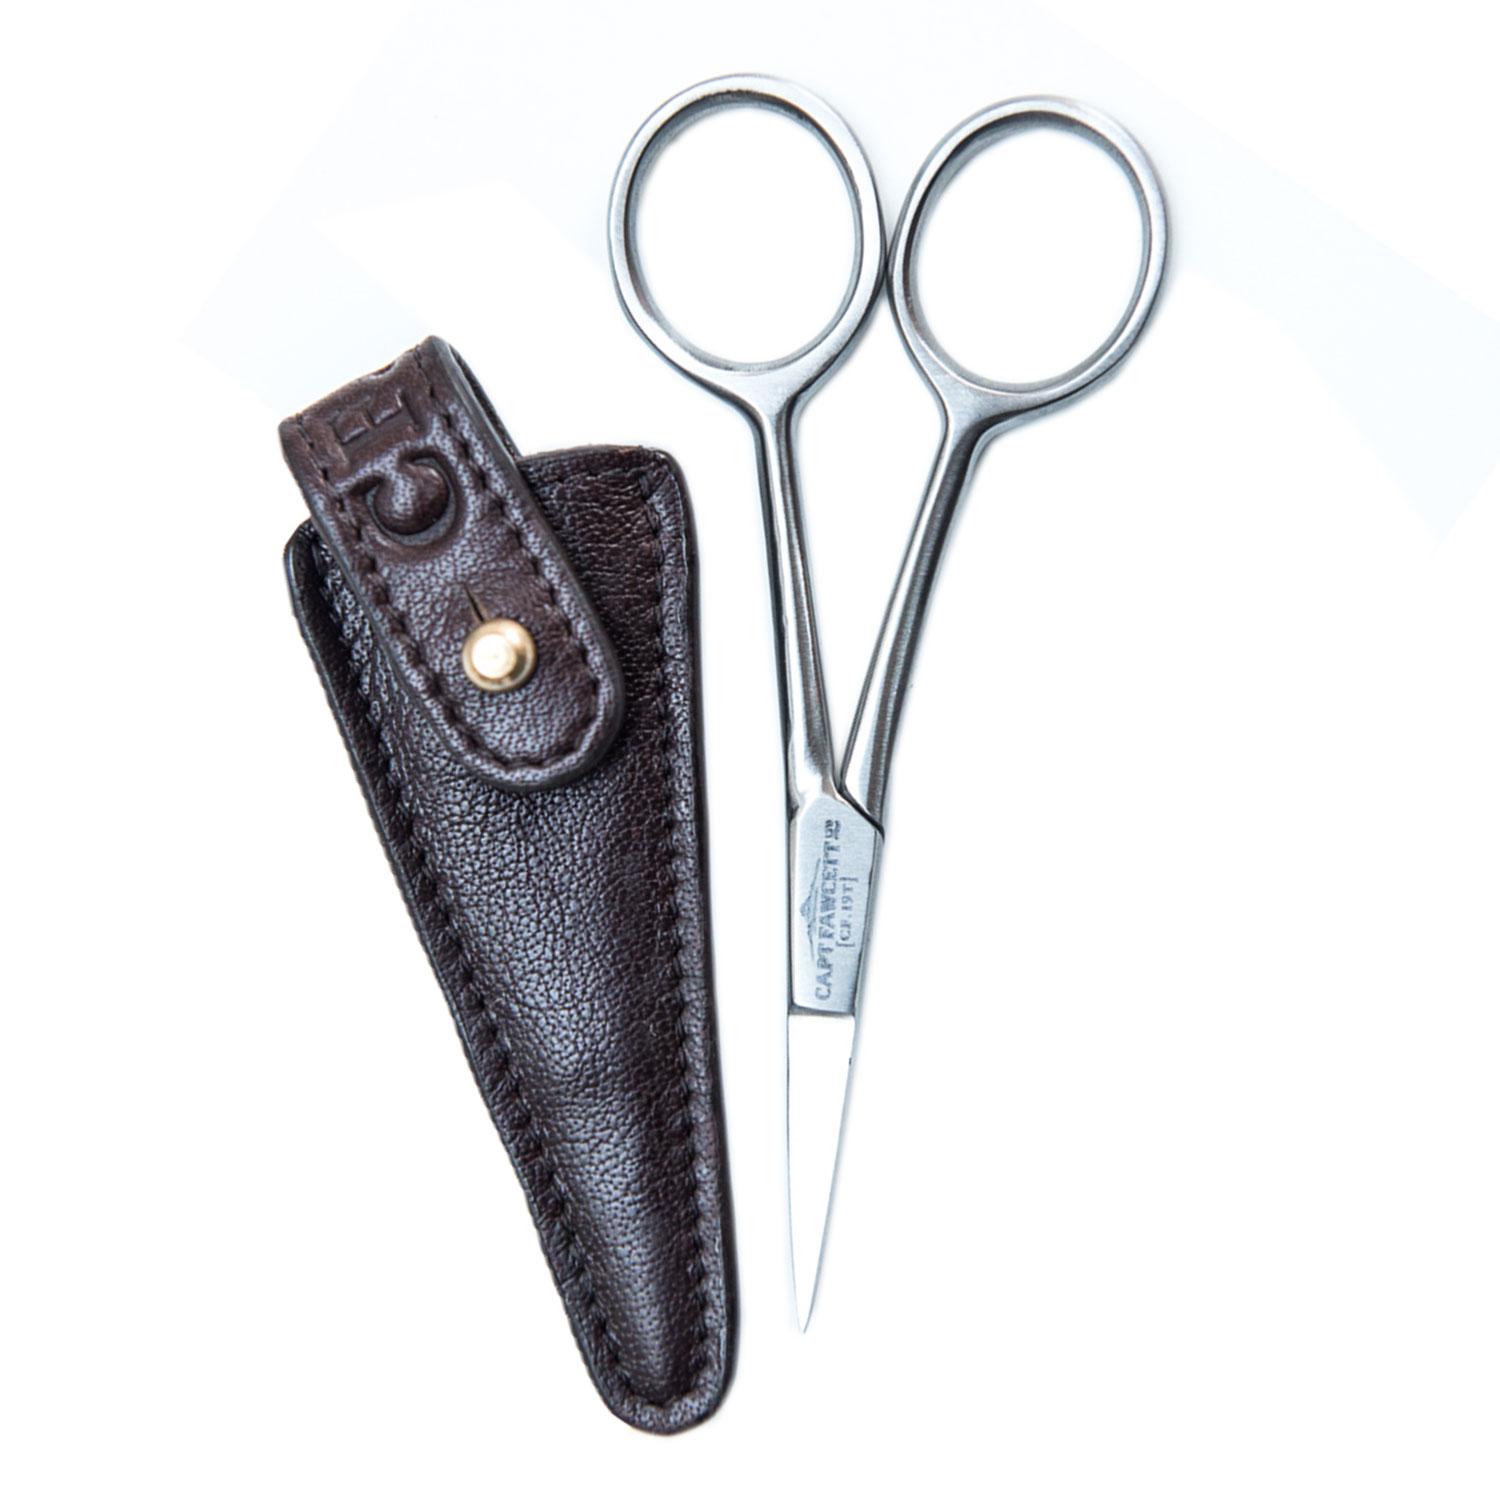 Capt. Fawcett Tools - Grooming Scissors